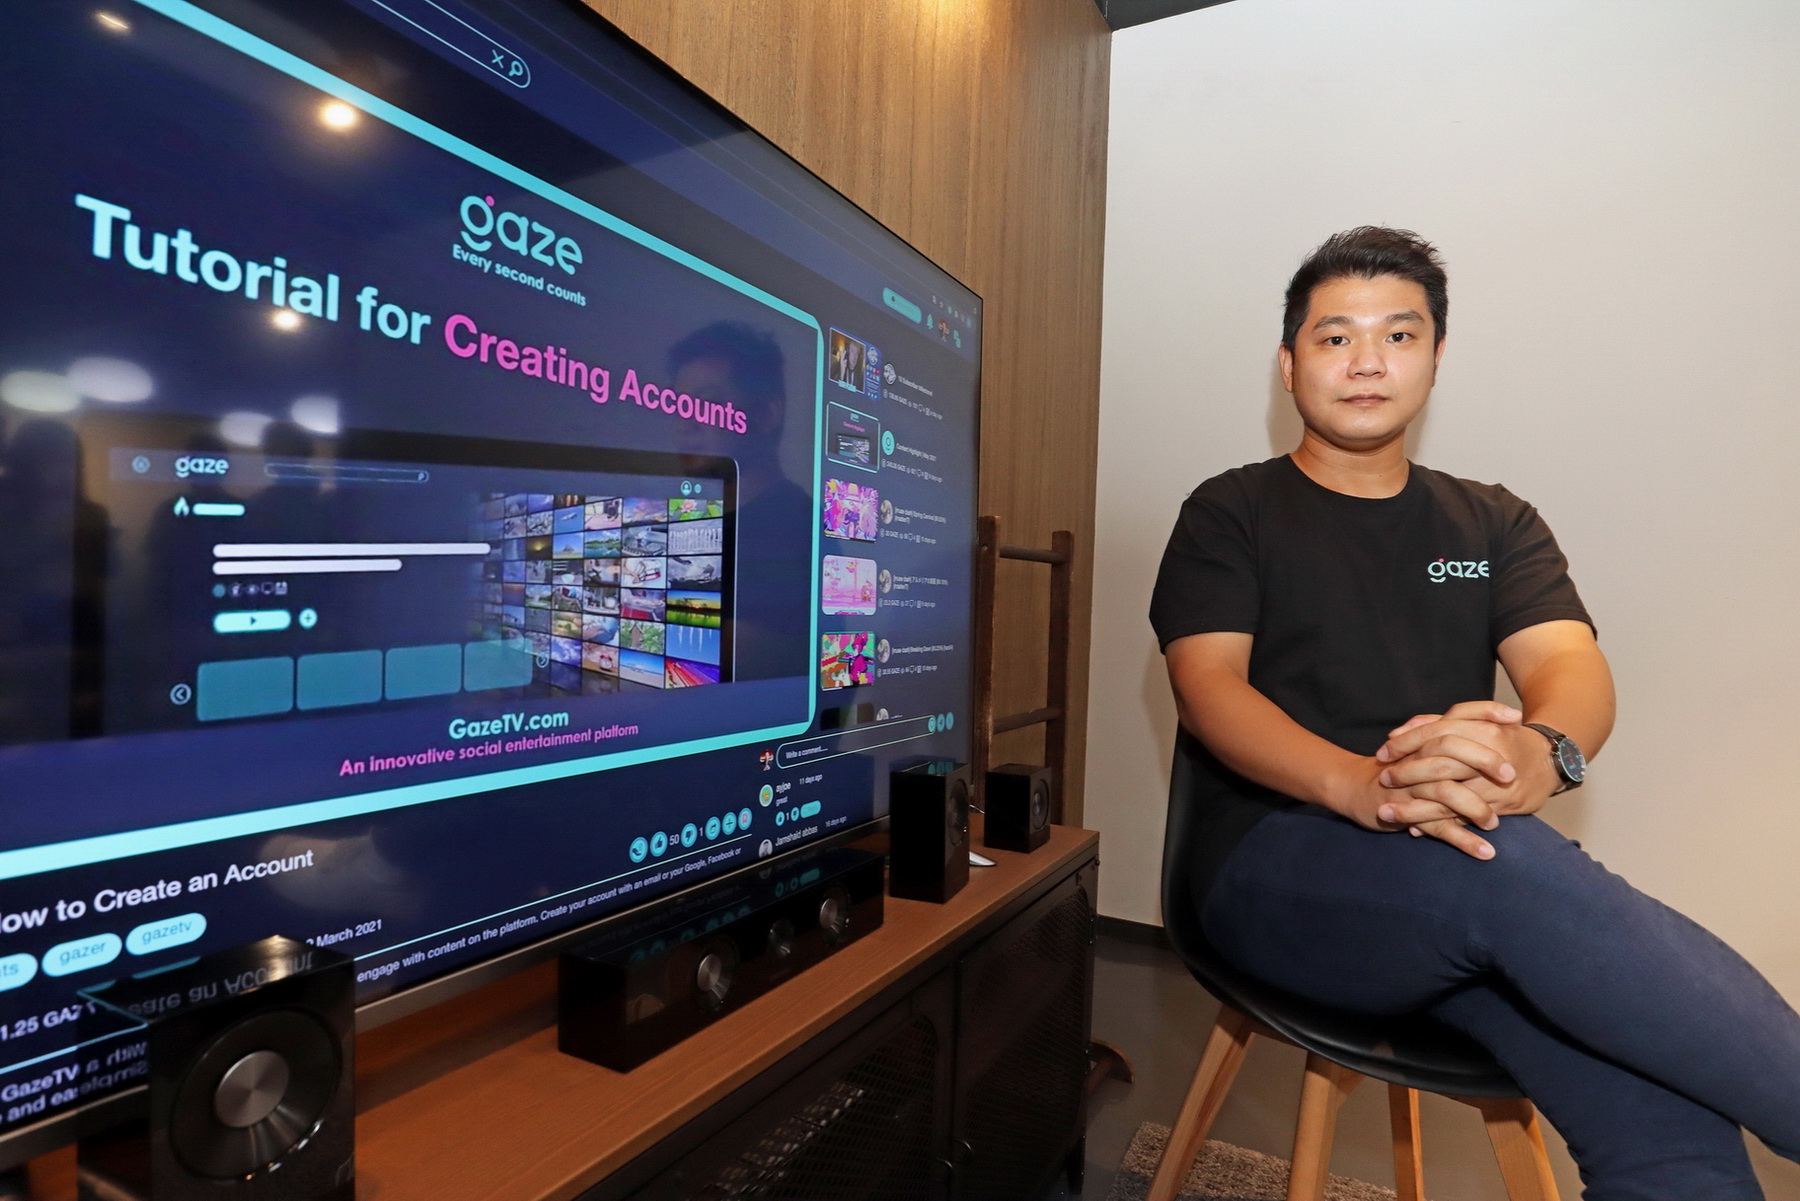 鄭智國表示，GazeTV建基在區塊鏈上，虛幣數目可反映影片受歡迎程度。（何澤攝）